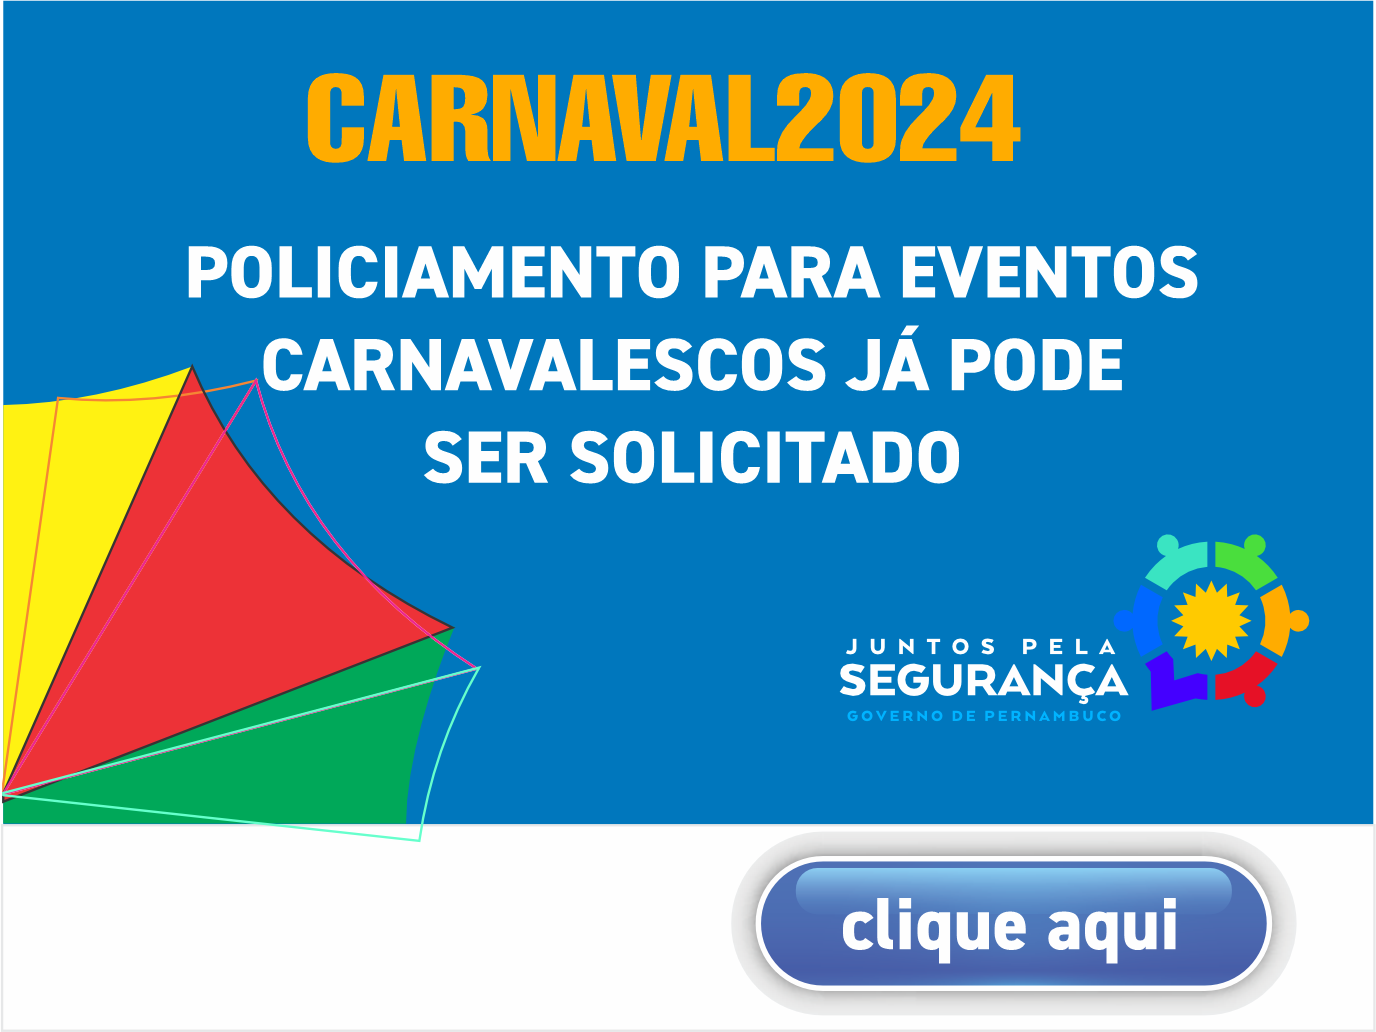 CARNAVAL 2024 – Policiamento para eventos carnavalescos já pode ser solicitado